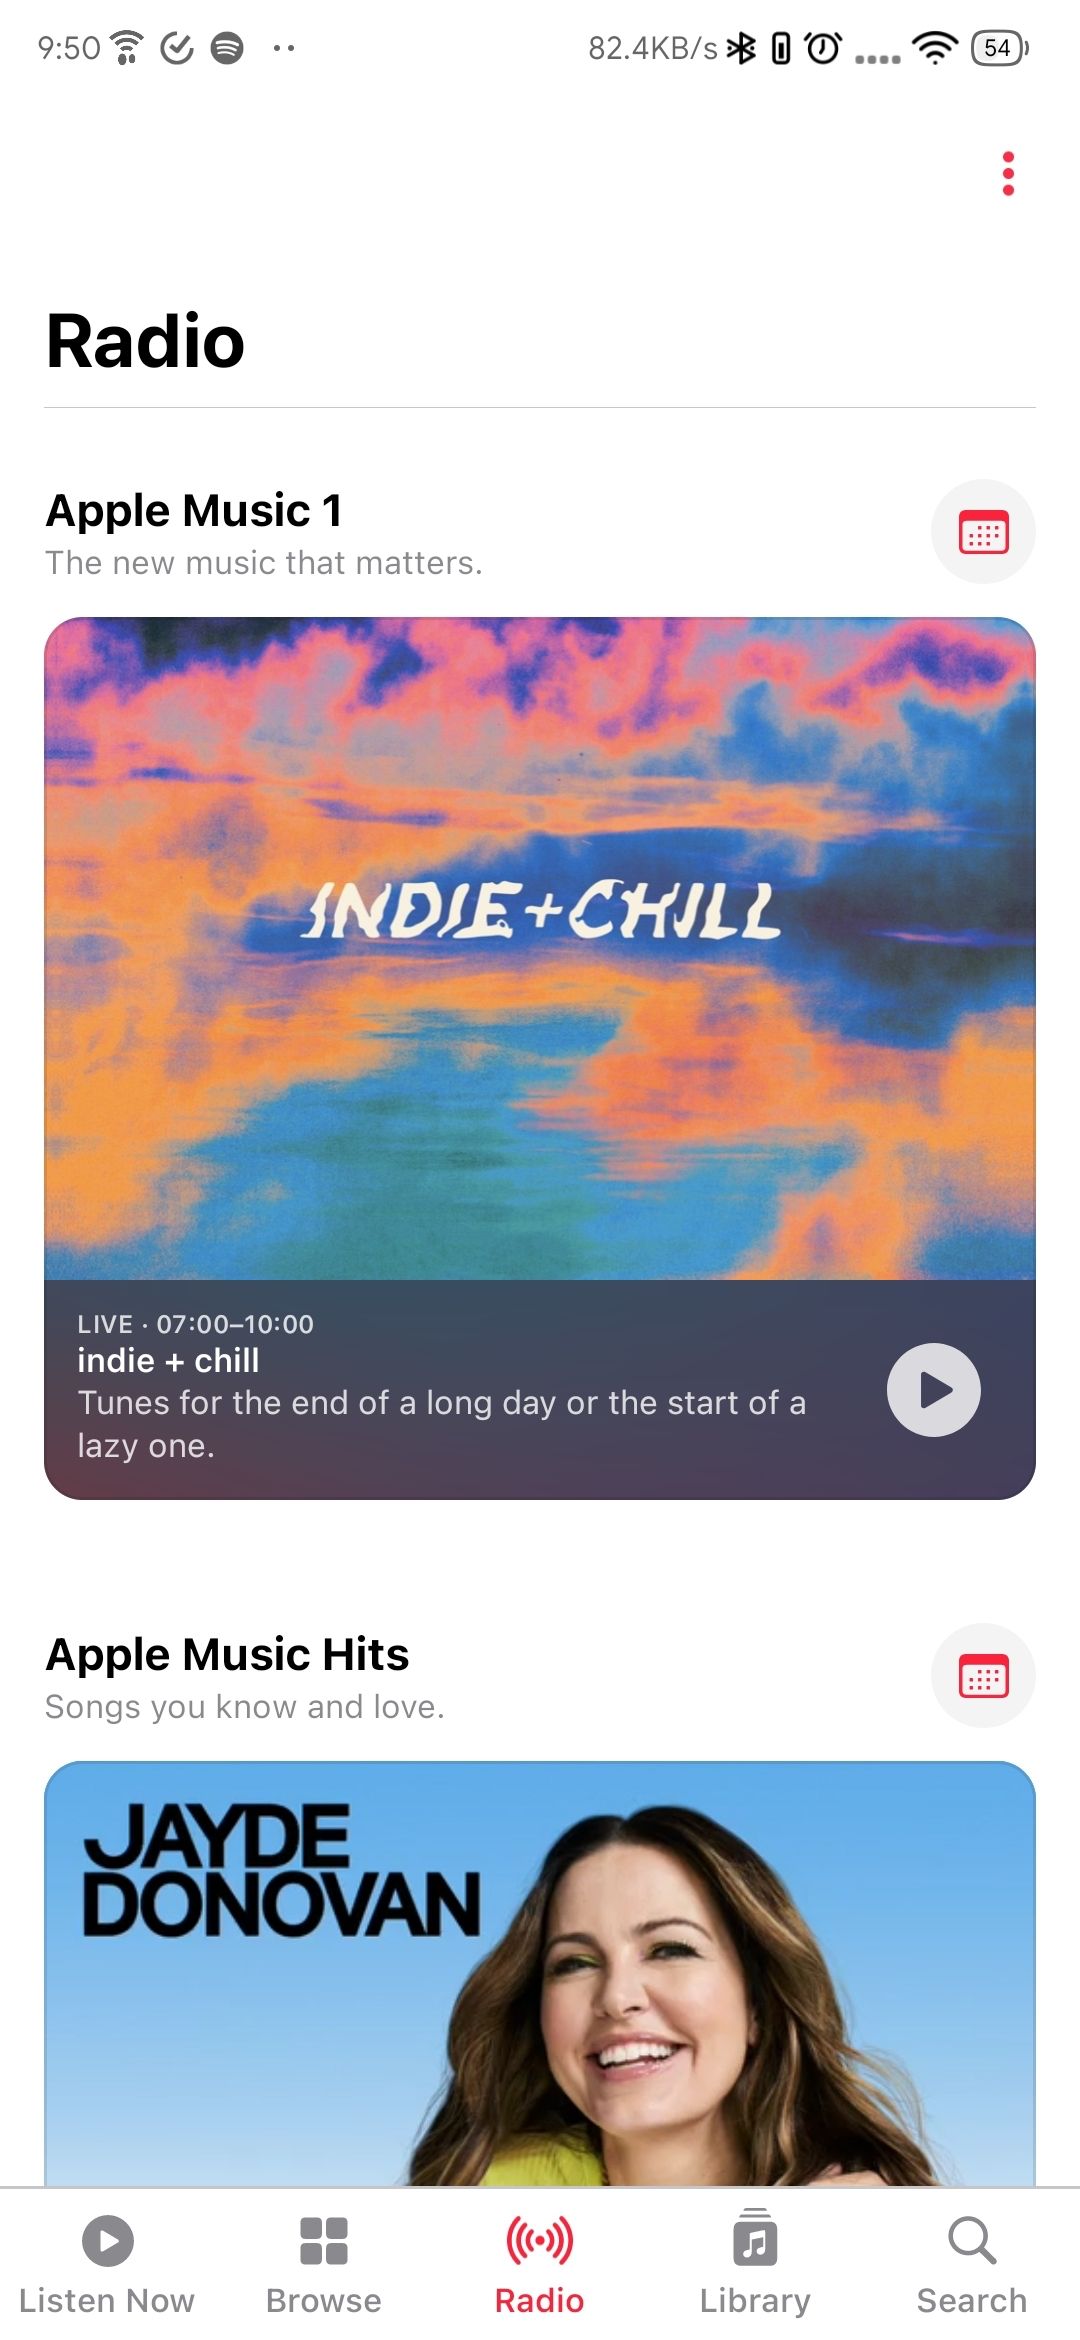 Radio tab on Apple Music Android app